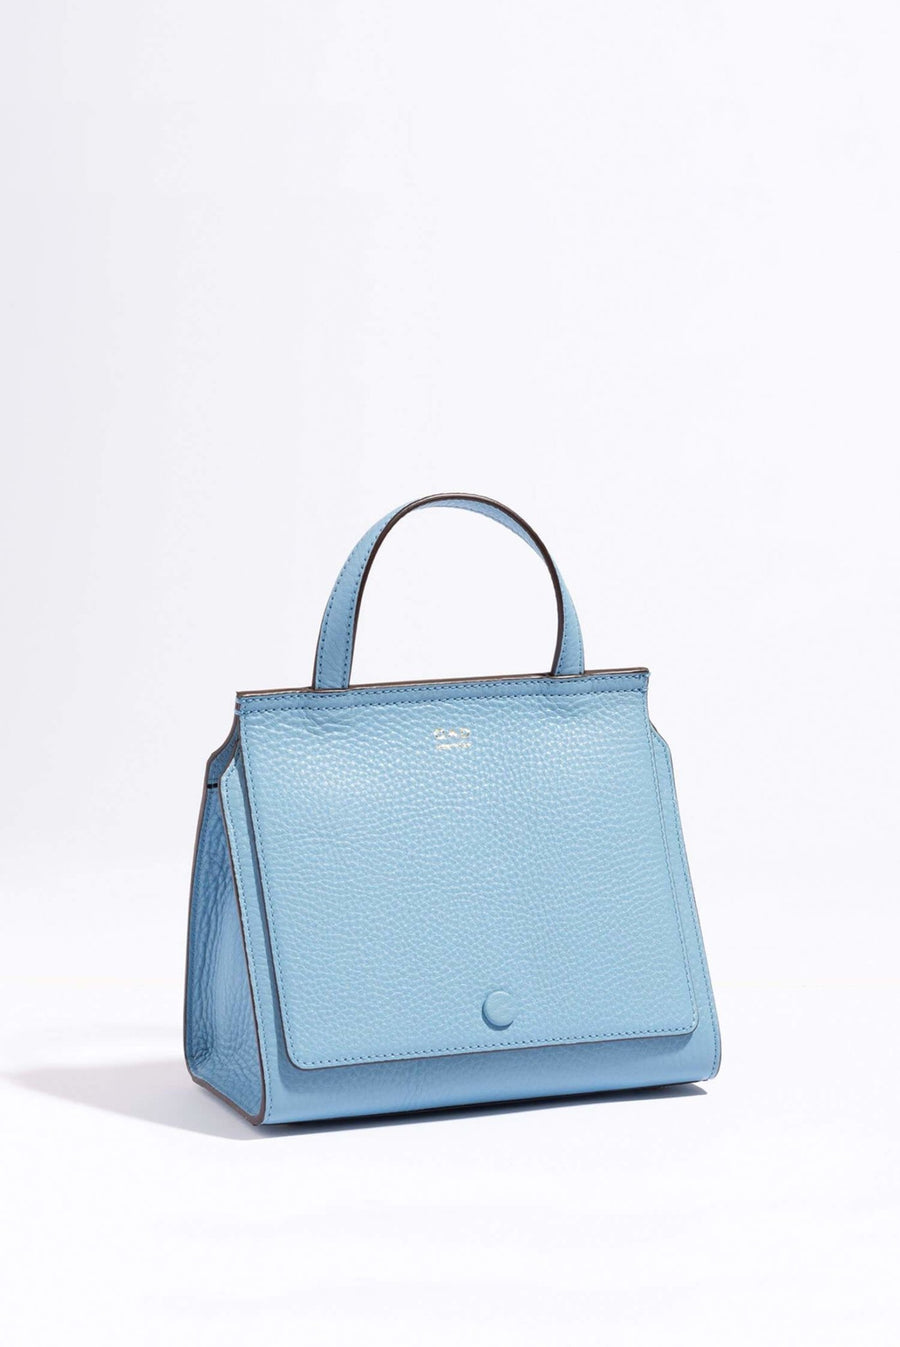 Mini Bags   OAD NEW YORK Handbags